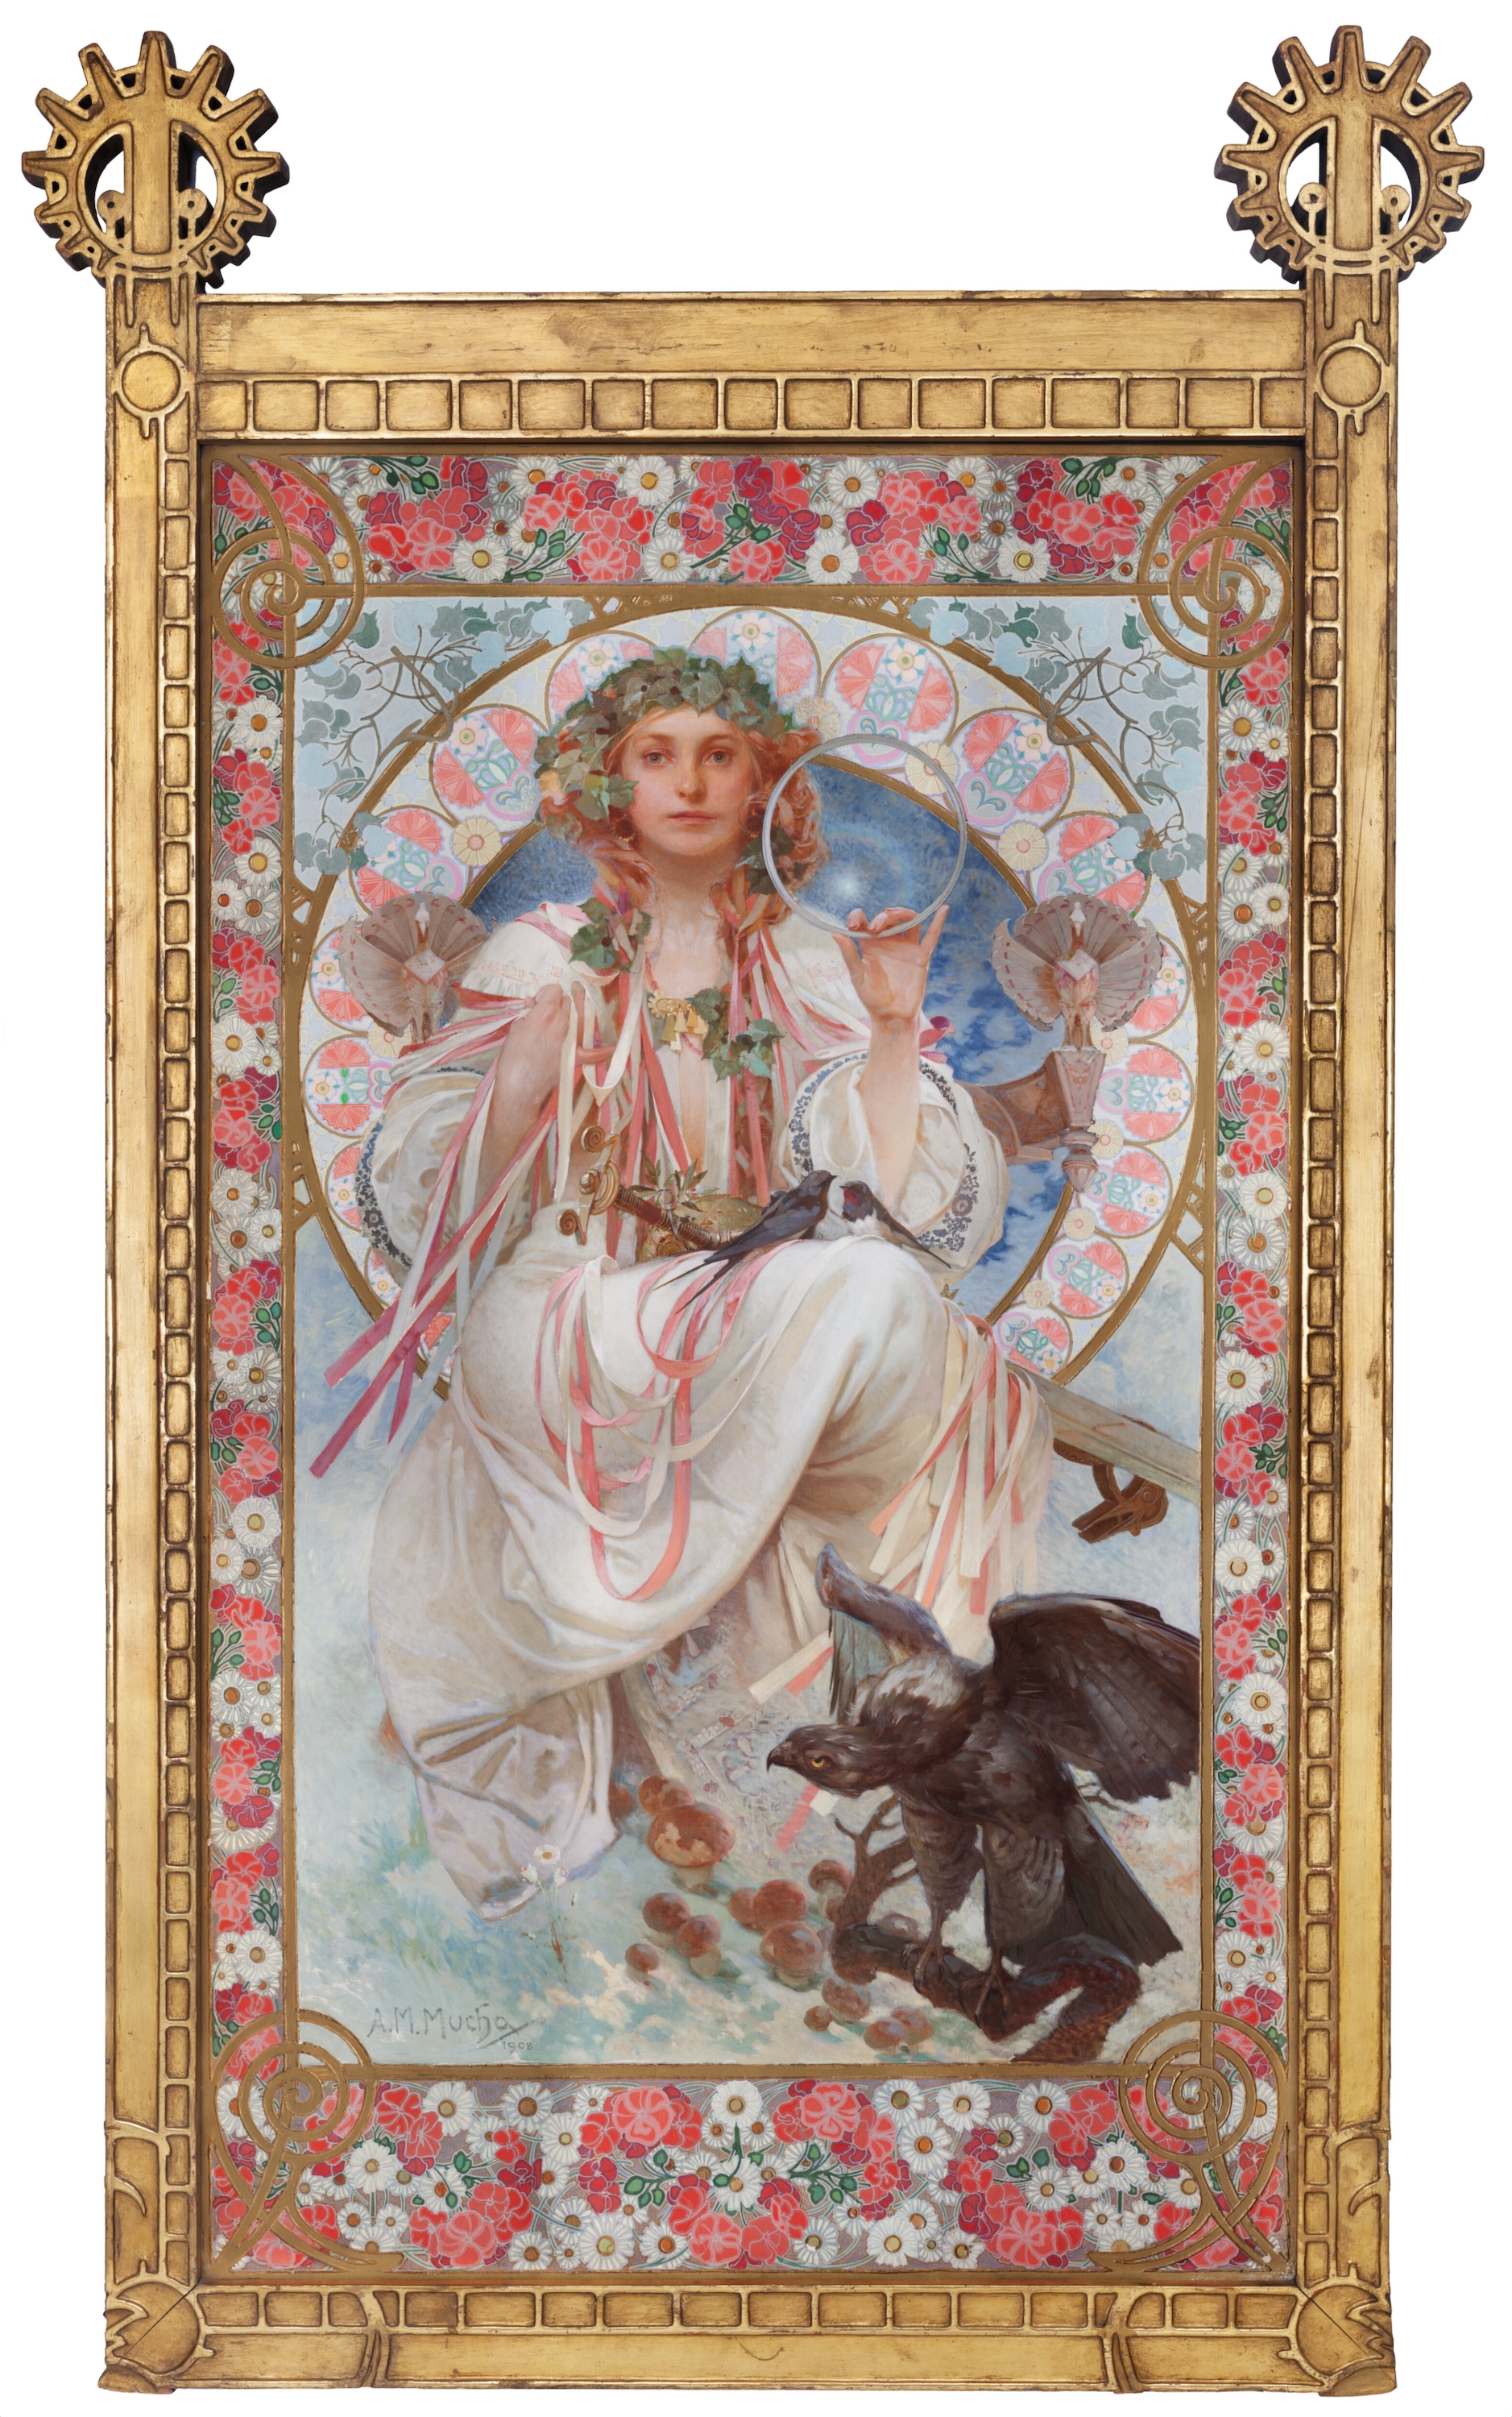 約瑟芬·克蘭-布拉德利的斯拉維亞 by Alphonse Mucha - 1908 - 154 x 92,5 cm 